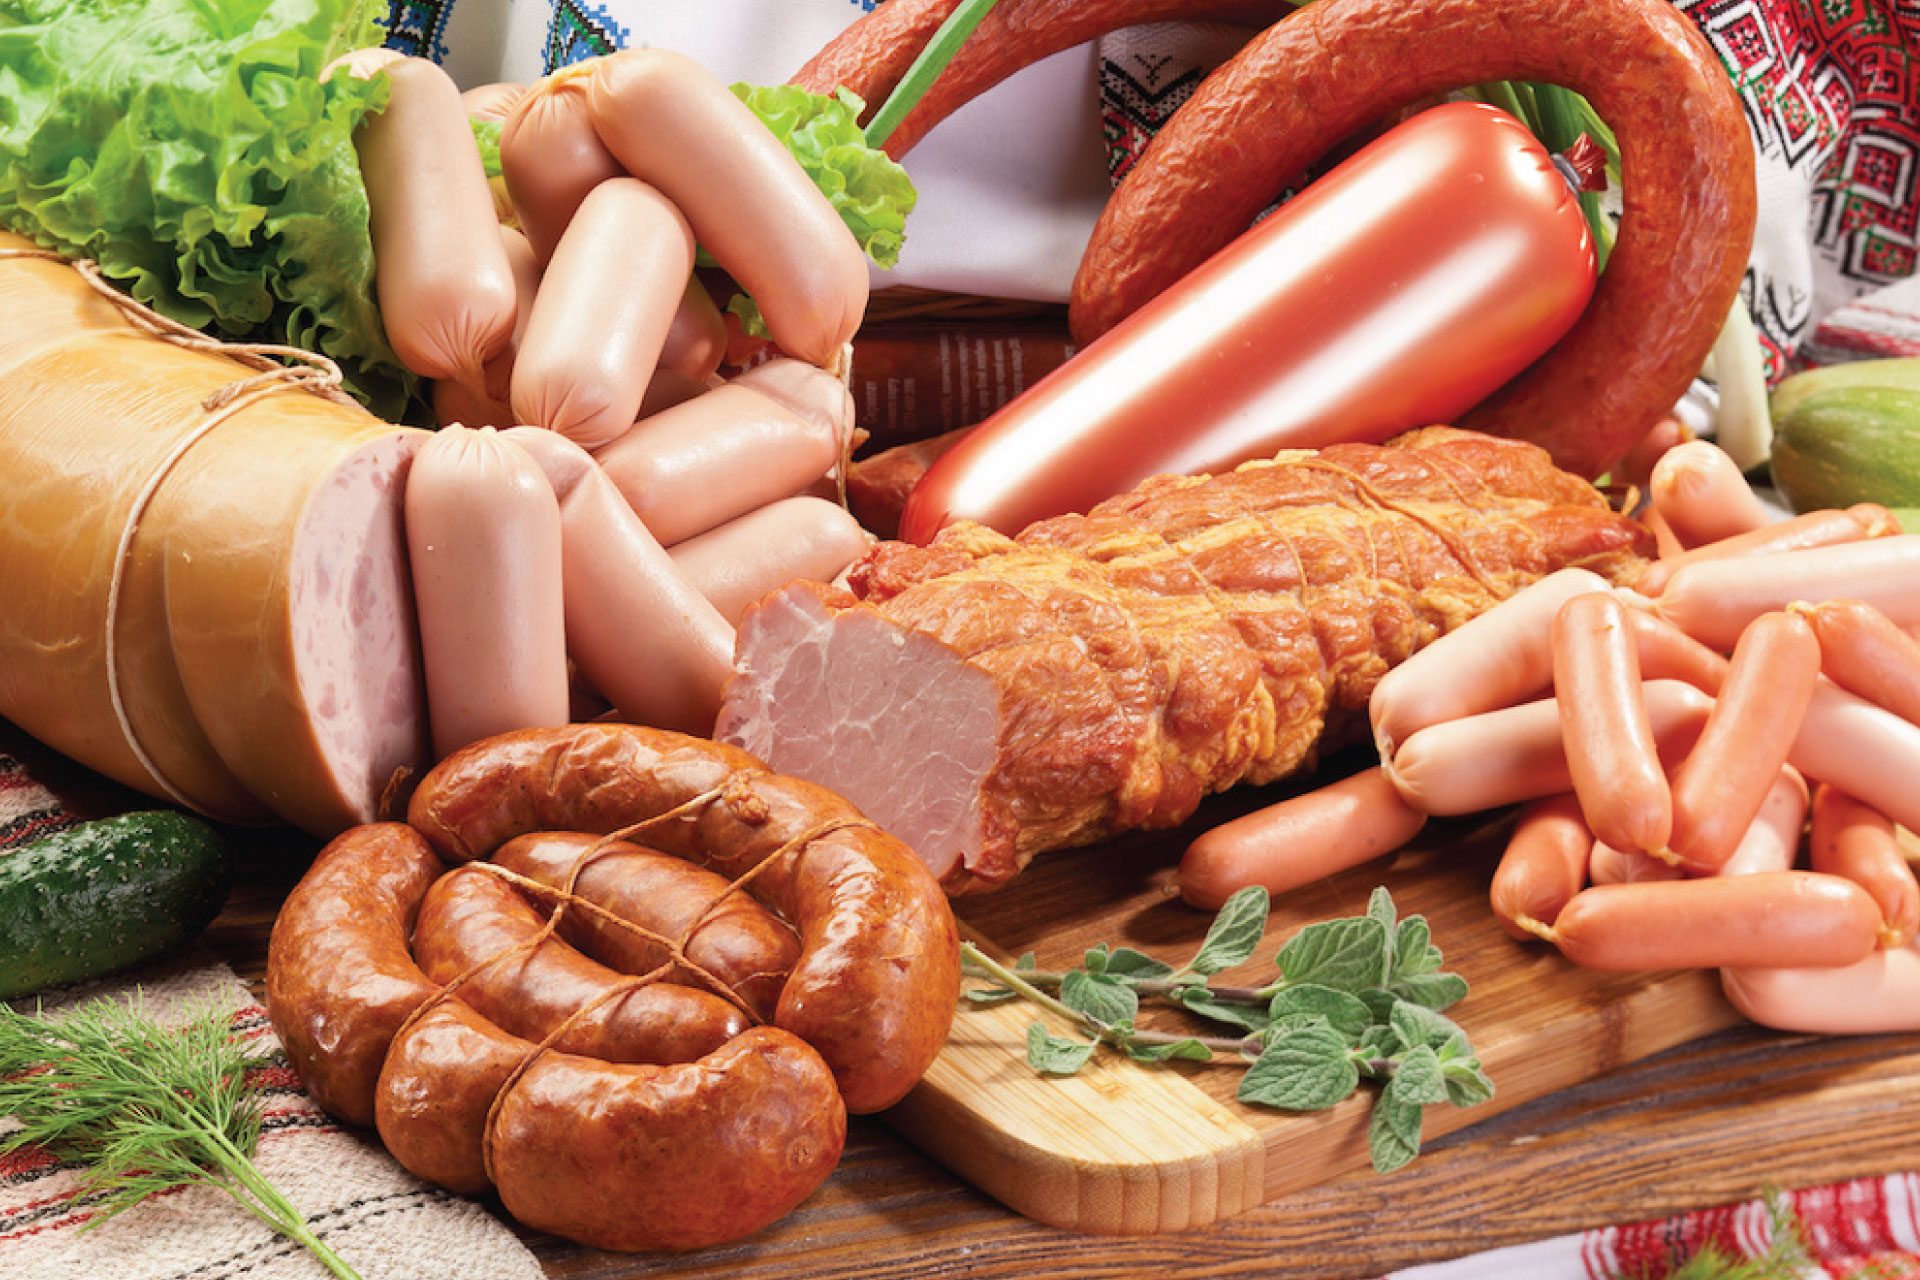 Các loại thịt chế biến sẵn, như: giò; thịt muối; thịt xông khói; xúc xích;...chứa nhiều chất phụ gia gây tăng cân